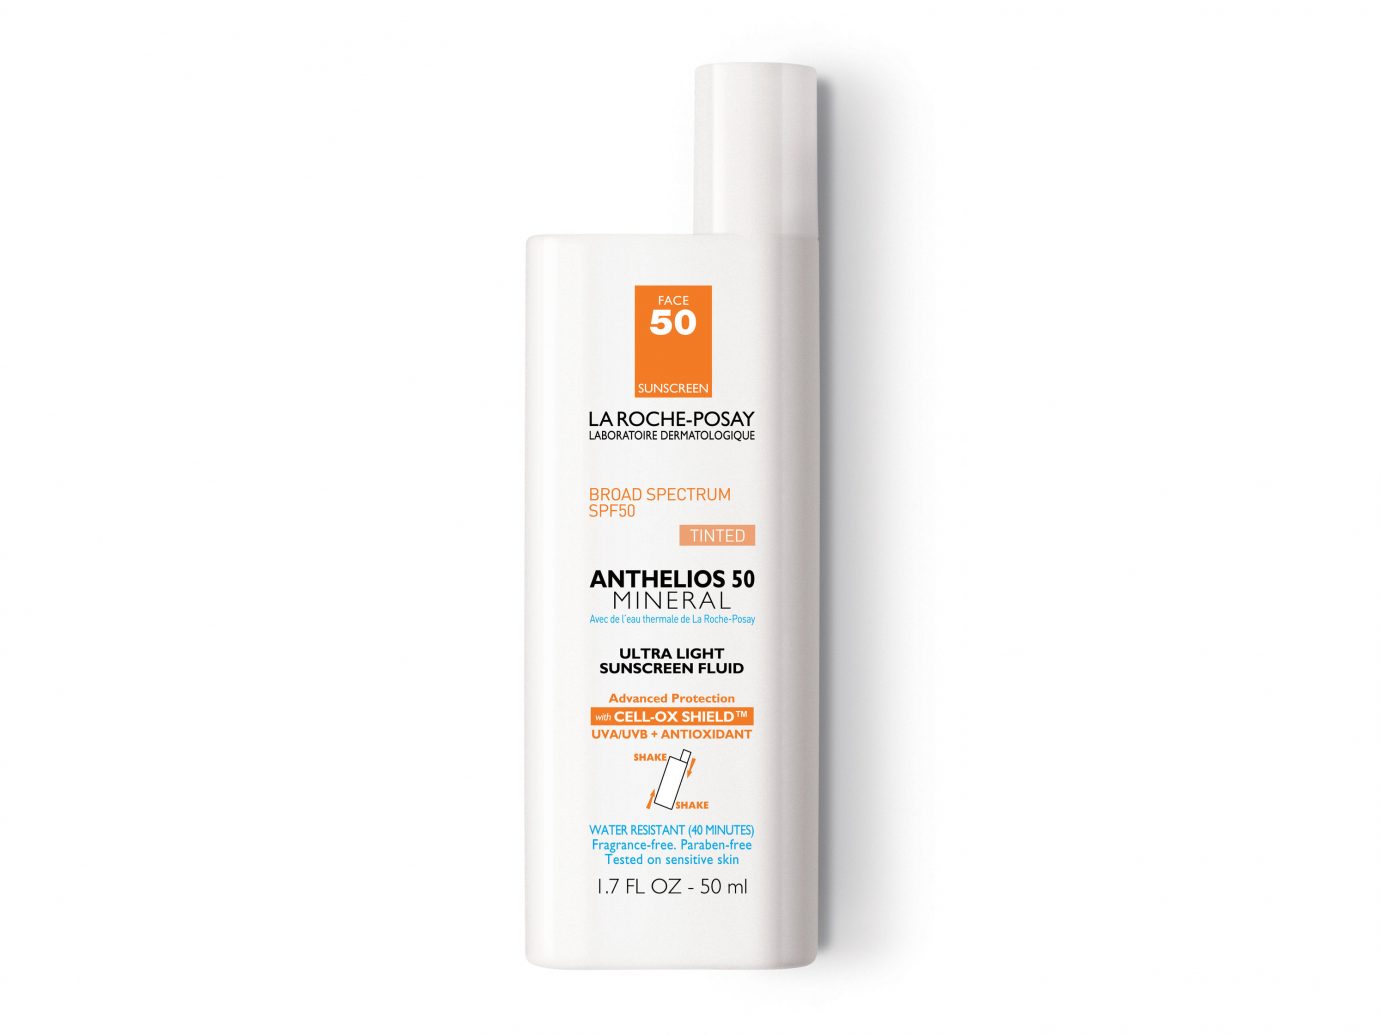 Beauty Health + Wellness Travel Shop product skin care lotion health & beauty sunscreen